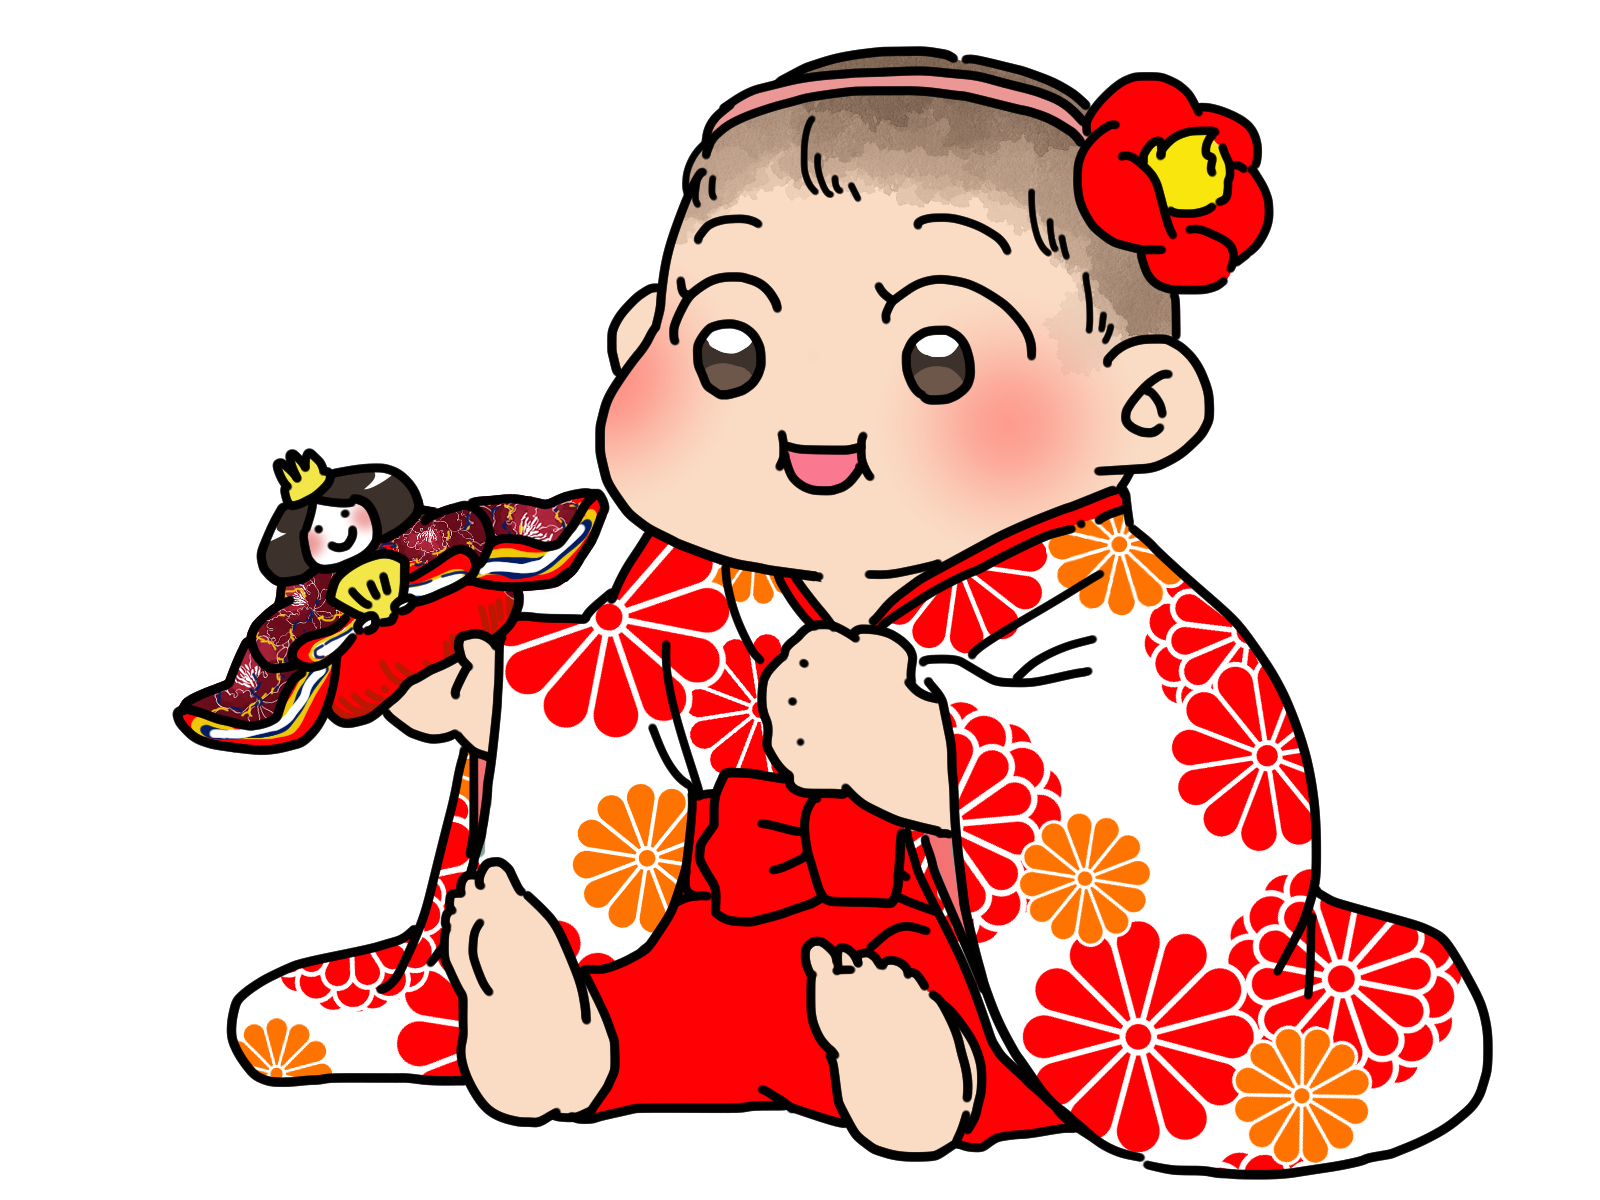 袴ロンパースを着た赤ちゃんのイラスト